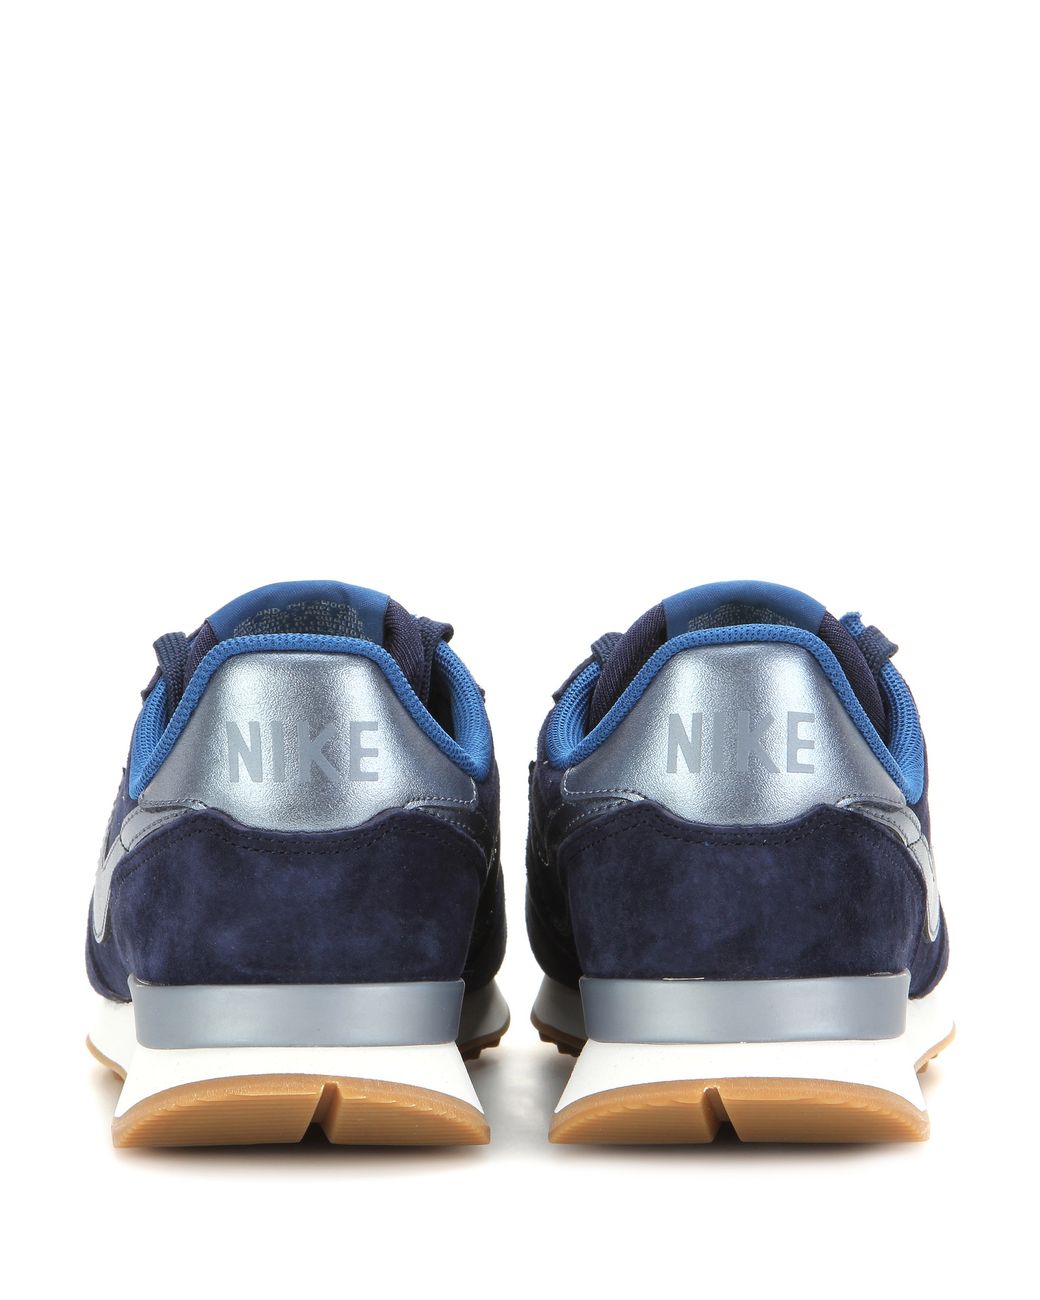 Nike Internationalist Suede Sneakers in Blue | Lyst